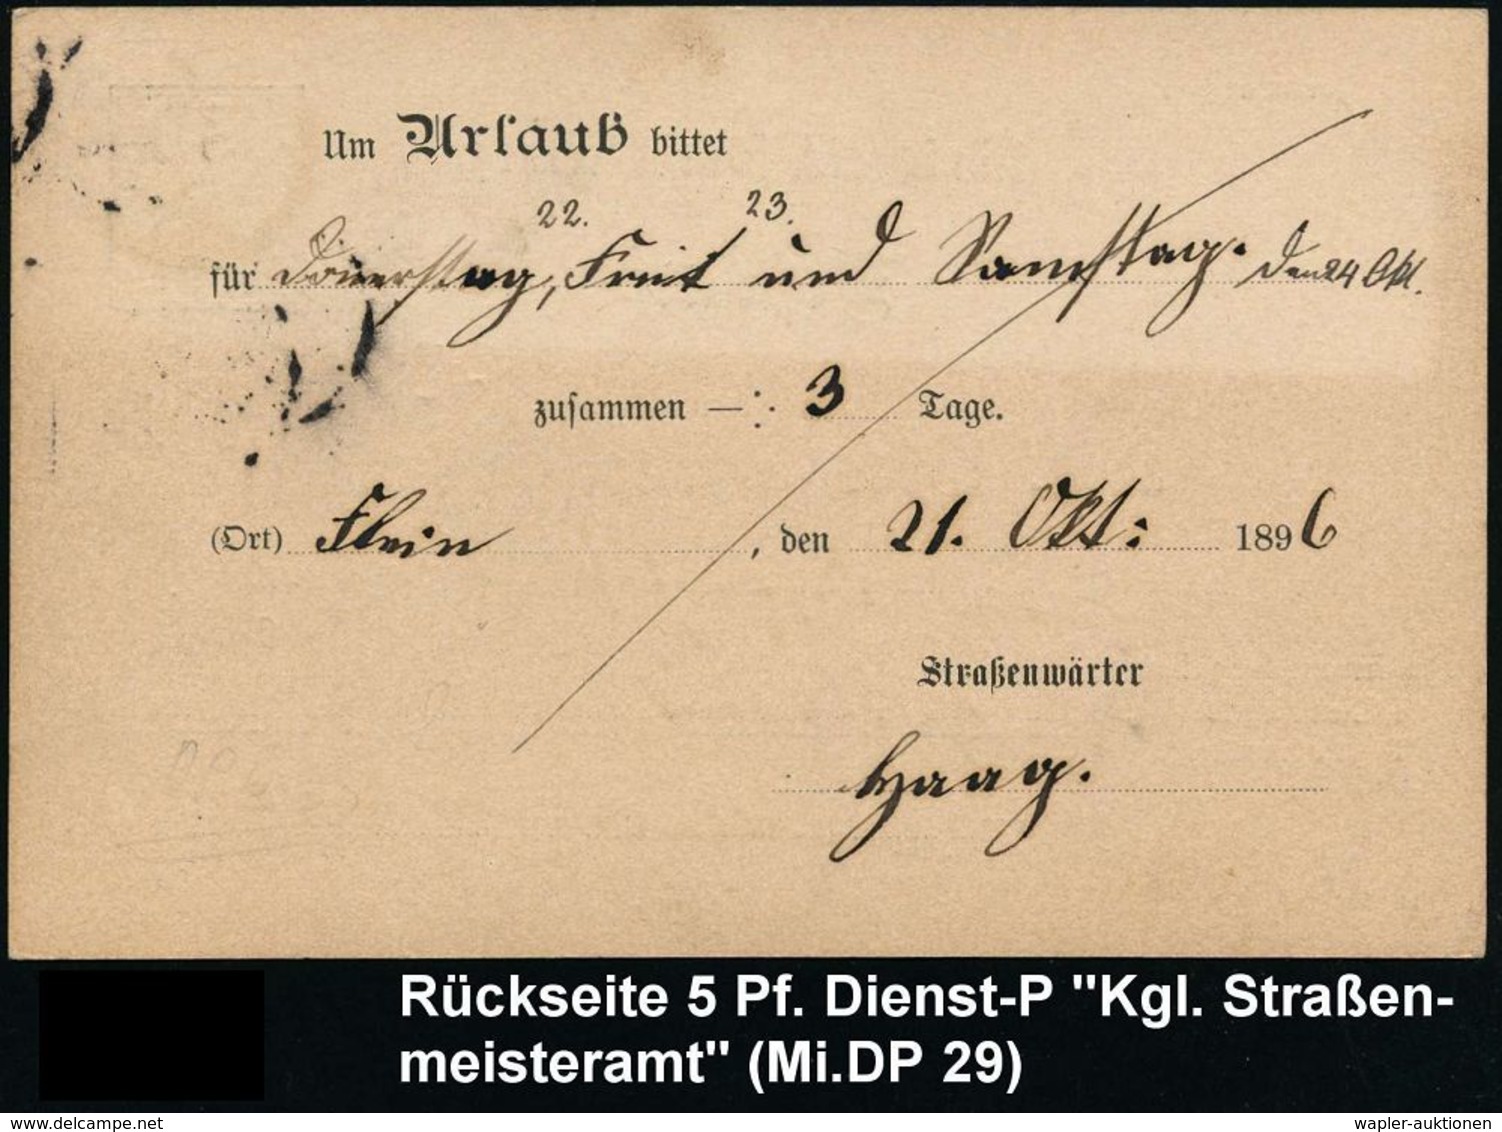 STRASSE / VERKEHRSWEGE / AUTOBAHN : HEILBRONN/ AM NECKAR 1896 (21.10.) 1K Als AS Auf Dienst-P. 5 Pf.: Kgl. Straßenmeiste - Autos